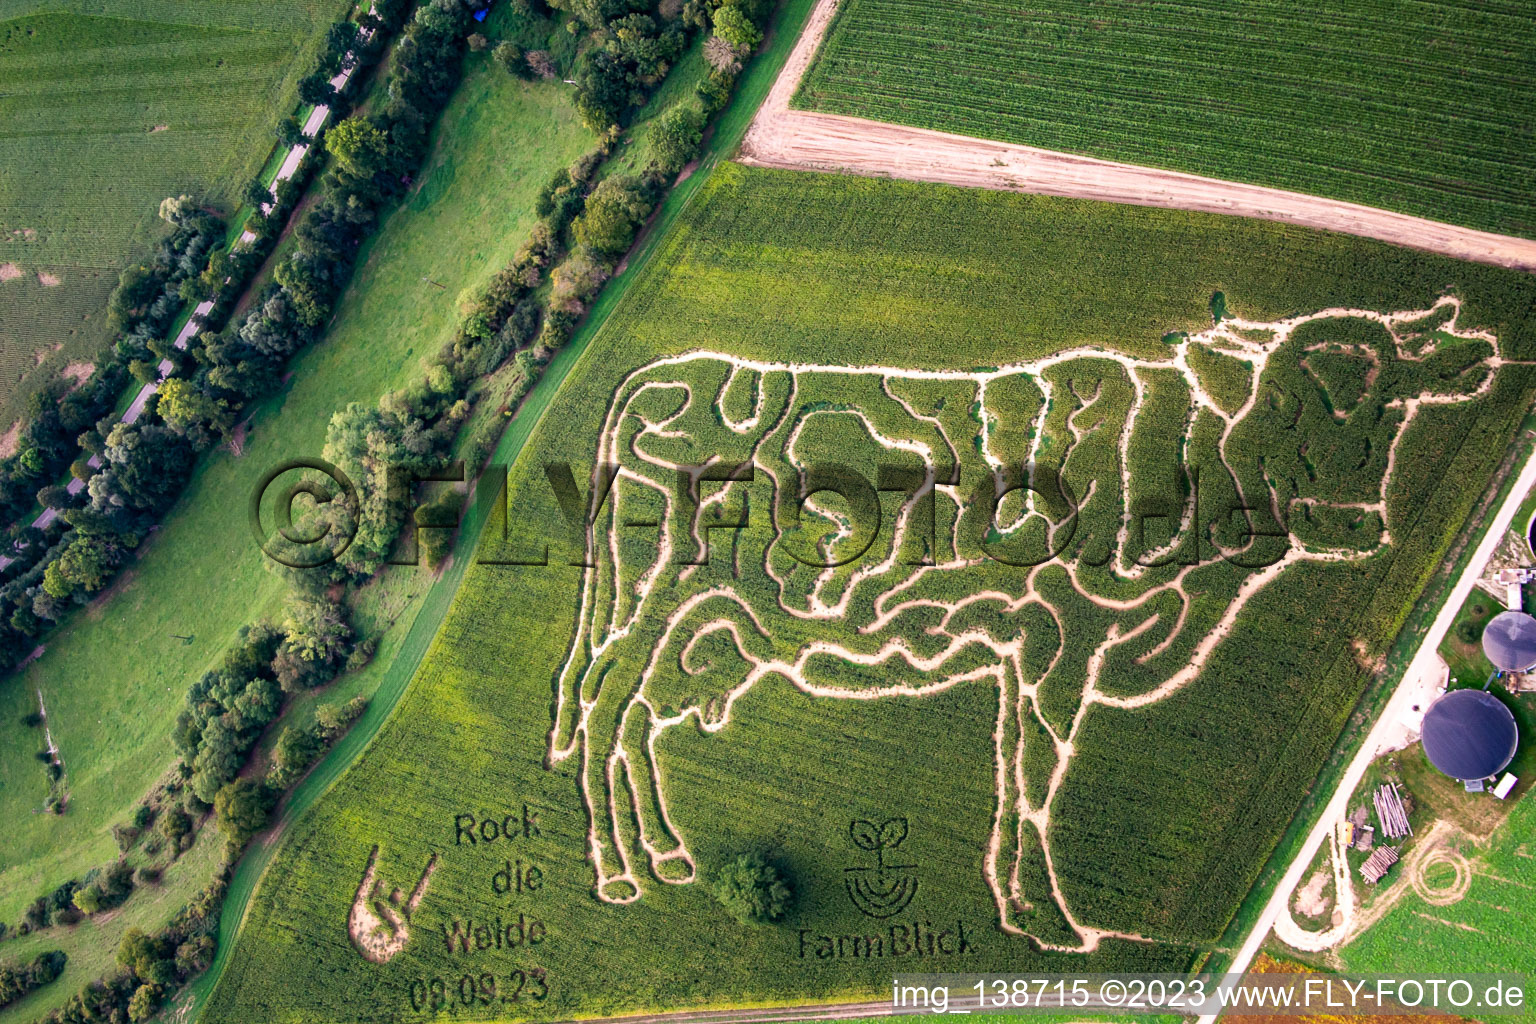 Vue aérienne de Labyrinthe de maïs à la ferme laitière Lämmle-Hofmann à Oberderdingen dans le département Bade-Wurtemberg, Allemagne